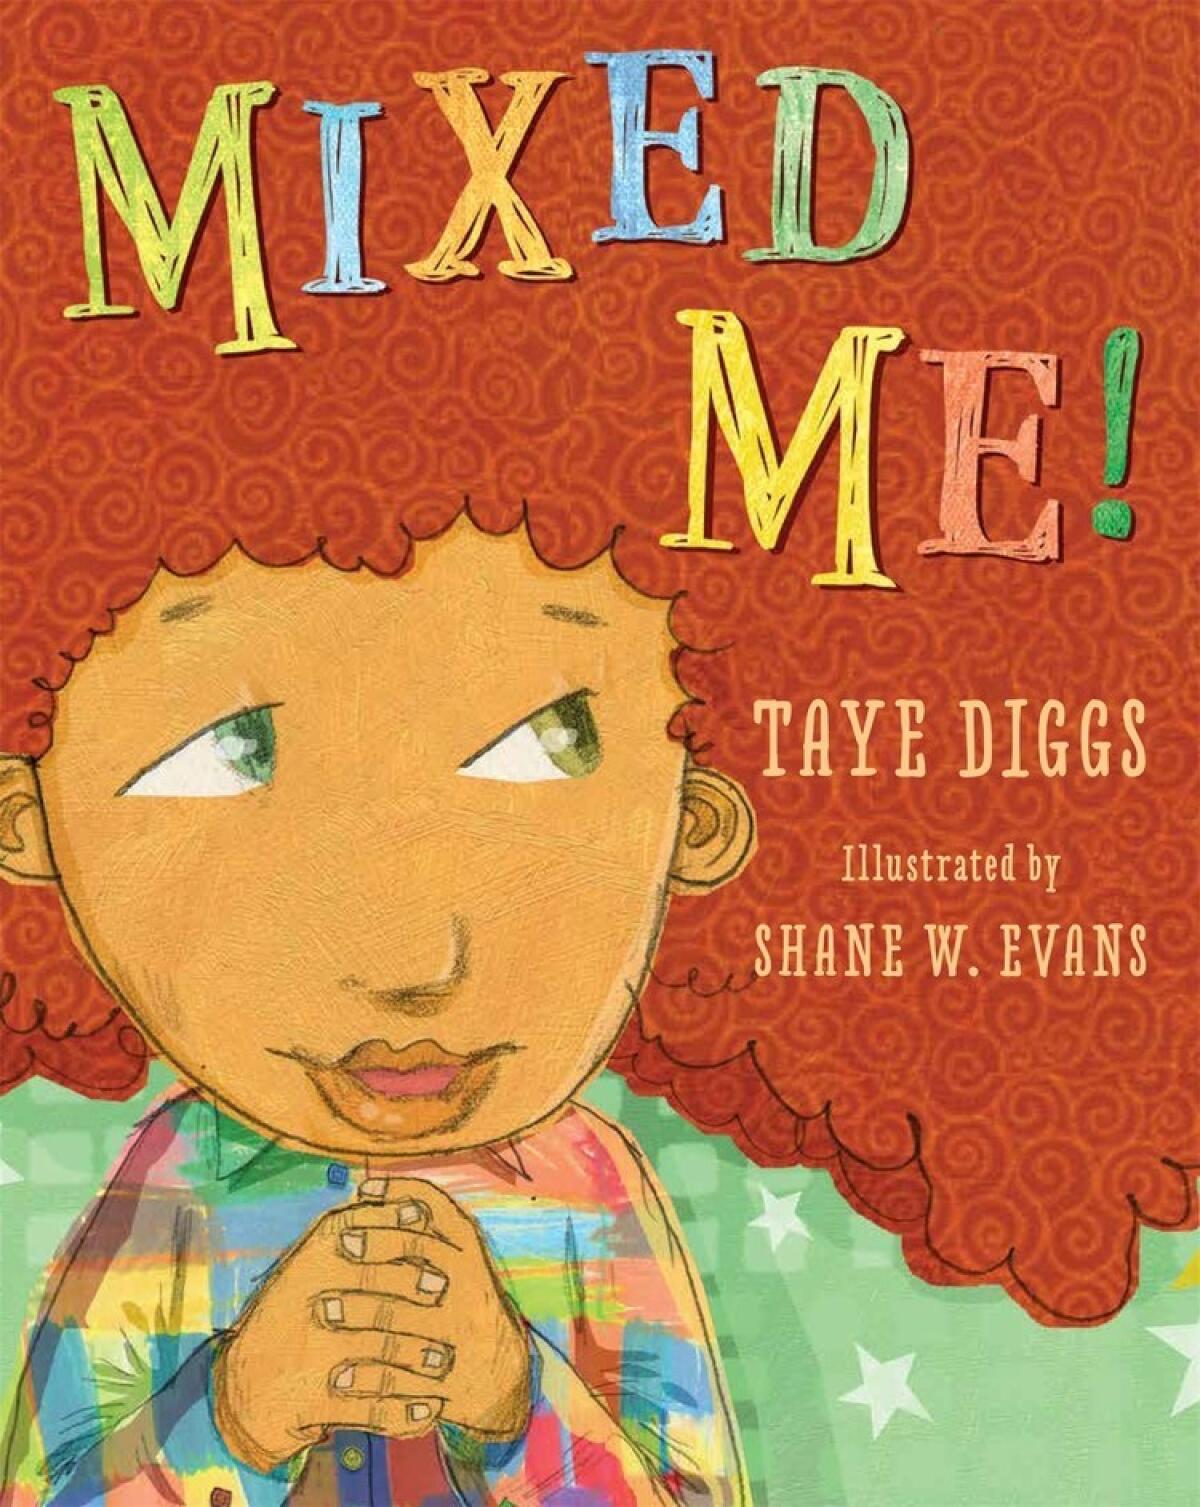 "Mixed Me!" by Taye Diggs